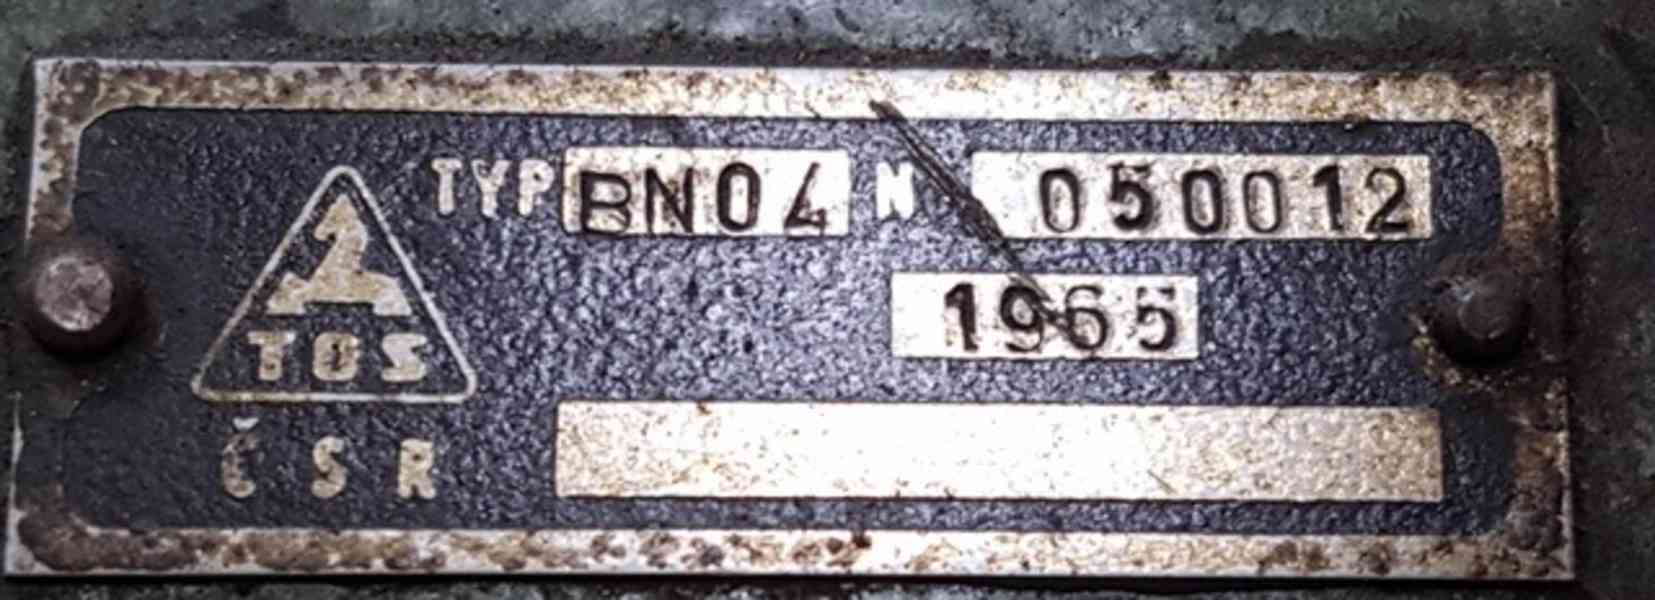 Bruska na kruhové závitové čelisti BNO 4 (11793.) - foto 6